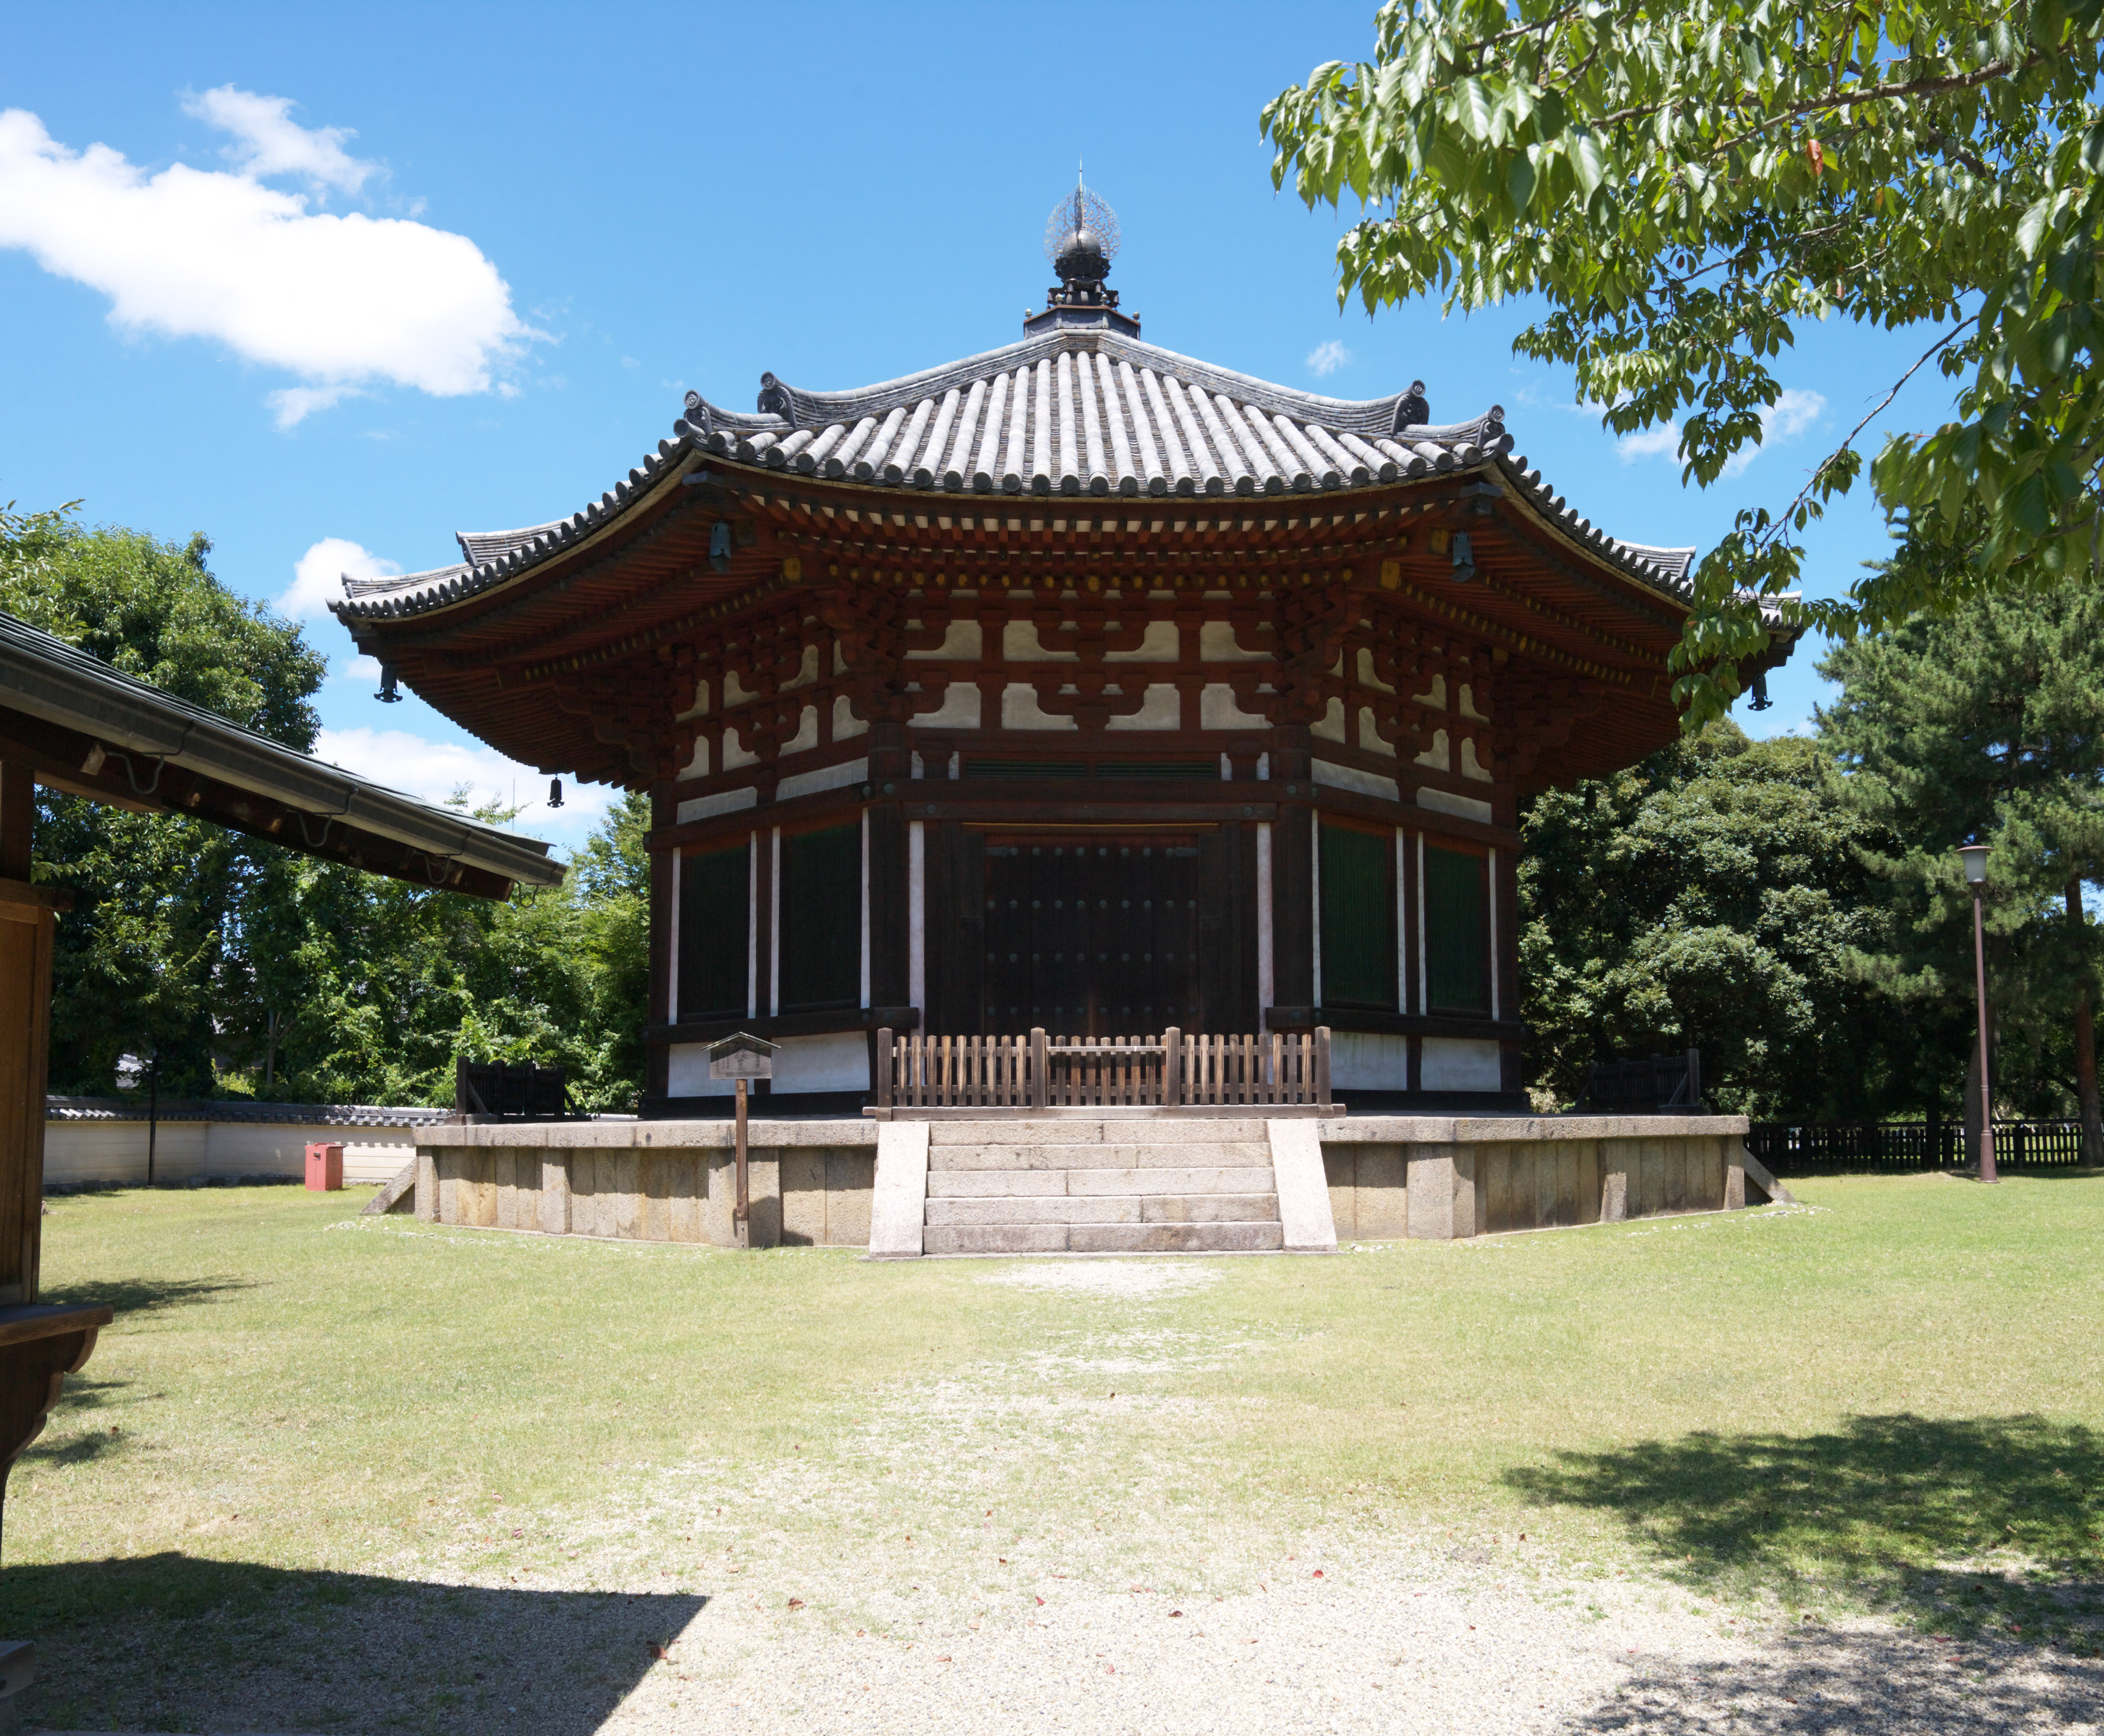 fotografia, materiale, libero il panorama, dipinga, fotografia di scorta,Nord di Tempio di Kofuku-ji edificio esagonale il tempio di Togane, Buddismo, edificio di legno, tetto, eredit di mondo